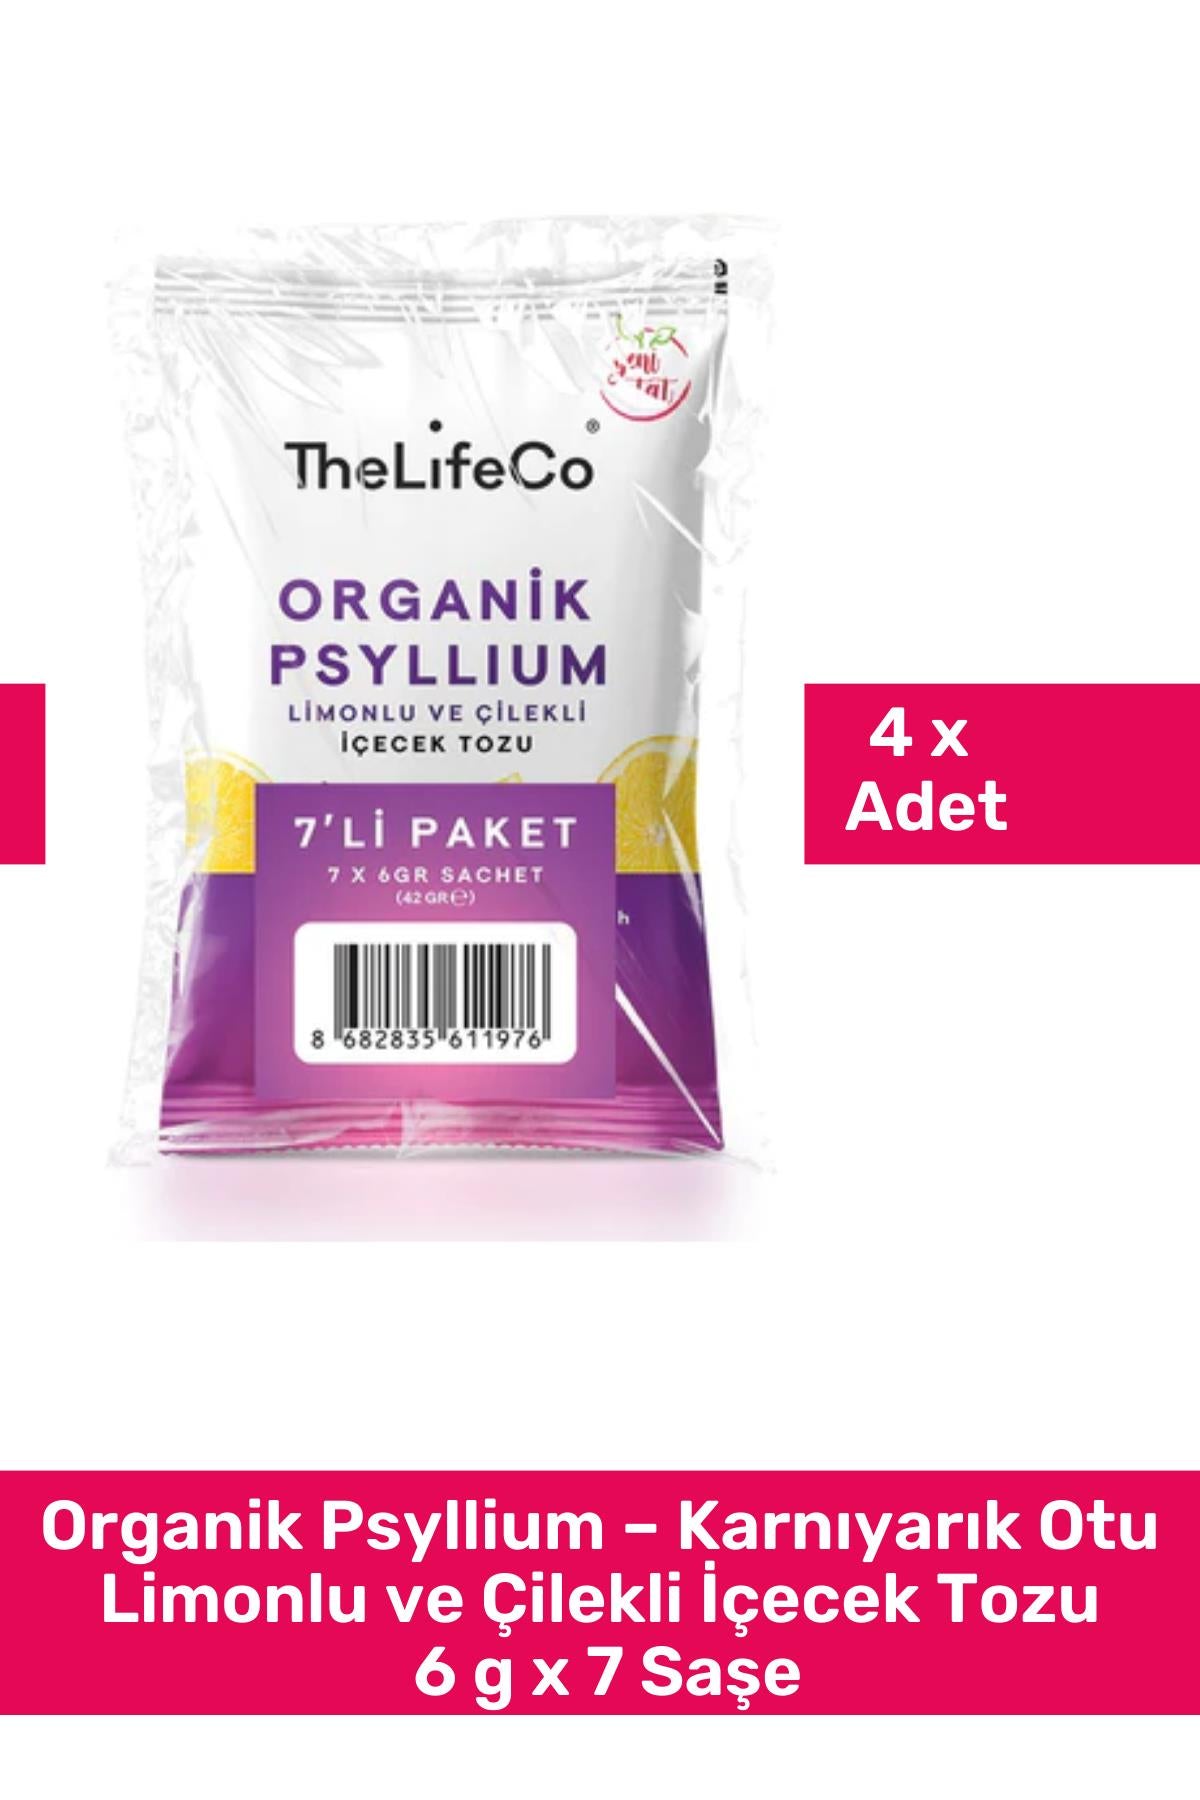 TheLifeCo Organik Psyllium – Karnıyarık Otu Limonlu ve Çilekli İçecek Tozu 6 g x 7 Saşe 4'lü Paket